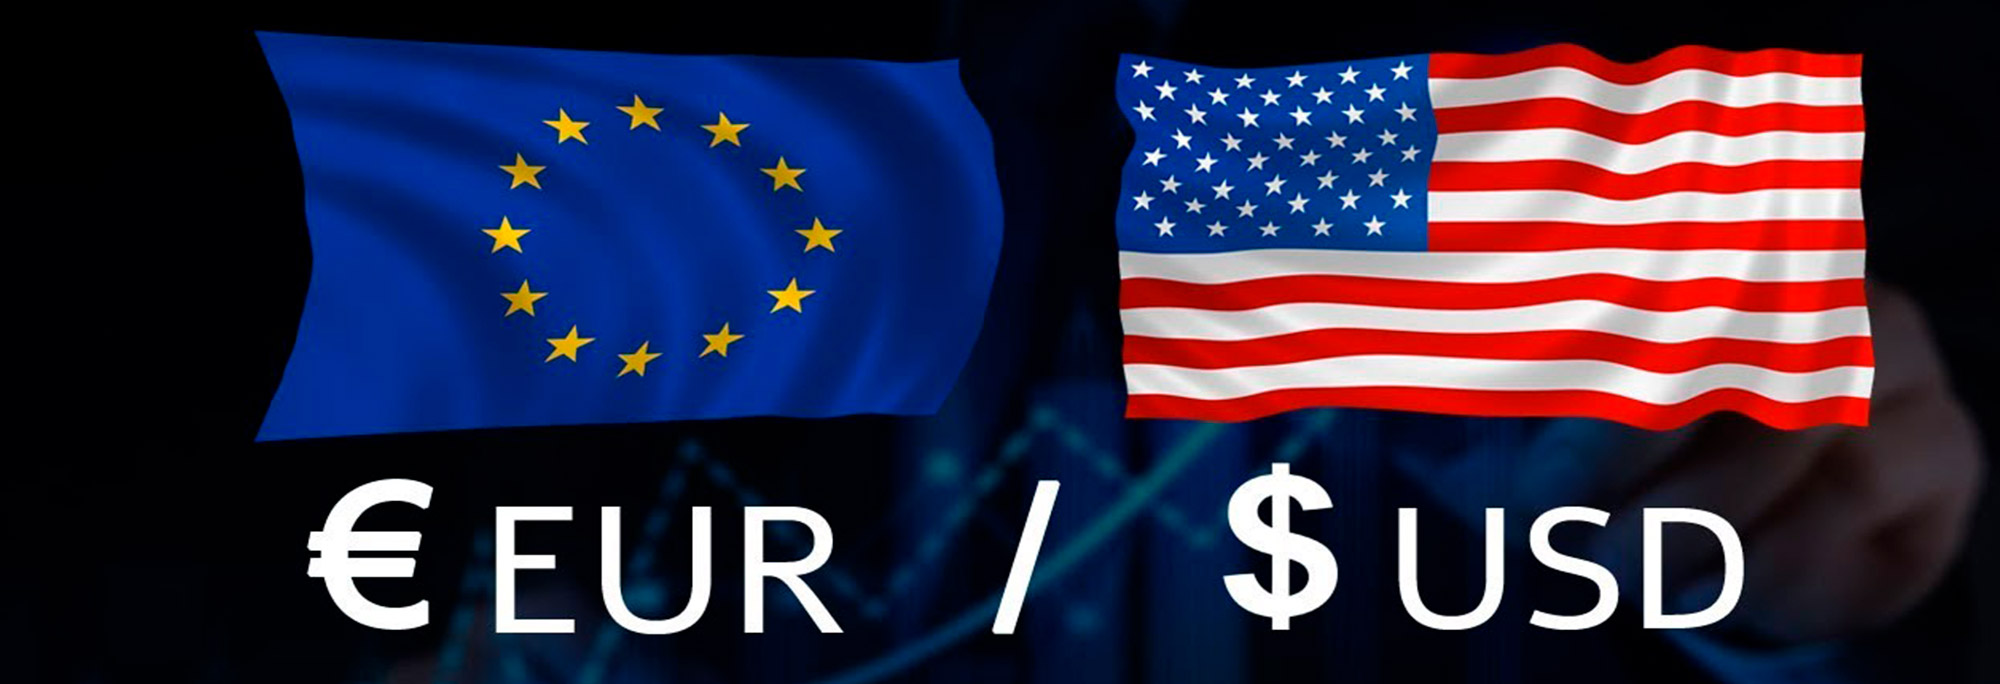 Европейская Консалтинговая Группа валюта евро